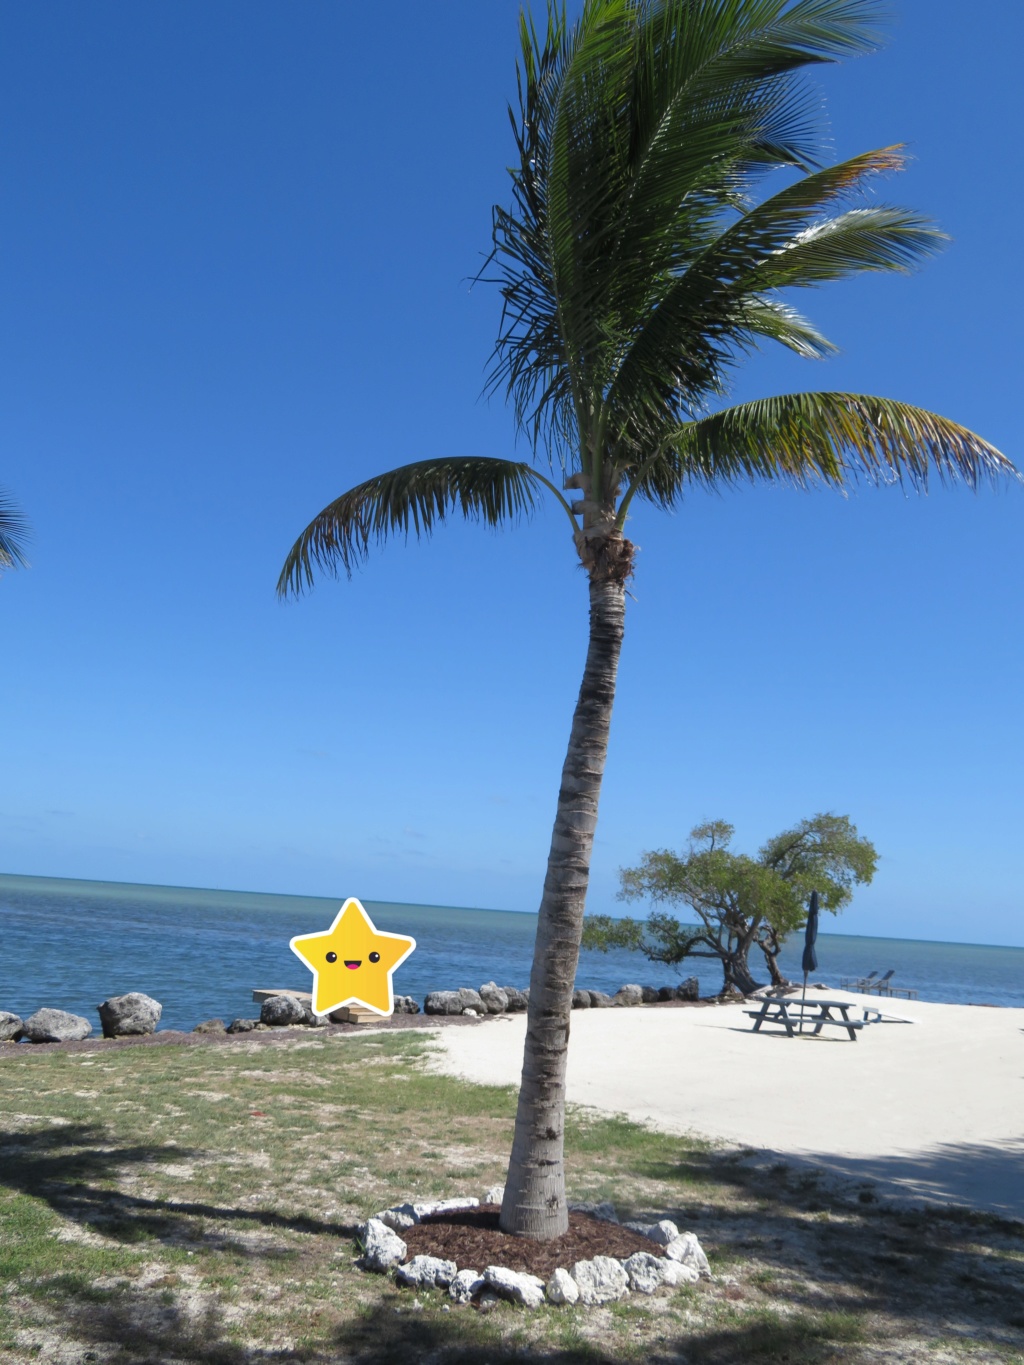 Avril 2019: Retour en Floride pour un séjour qui - cette fois - tient toutes ses promesses! (WDW-Universal-Côte Ouest-Everglades-Keys-Miami) [terminé] - Page 3 Img_3114